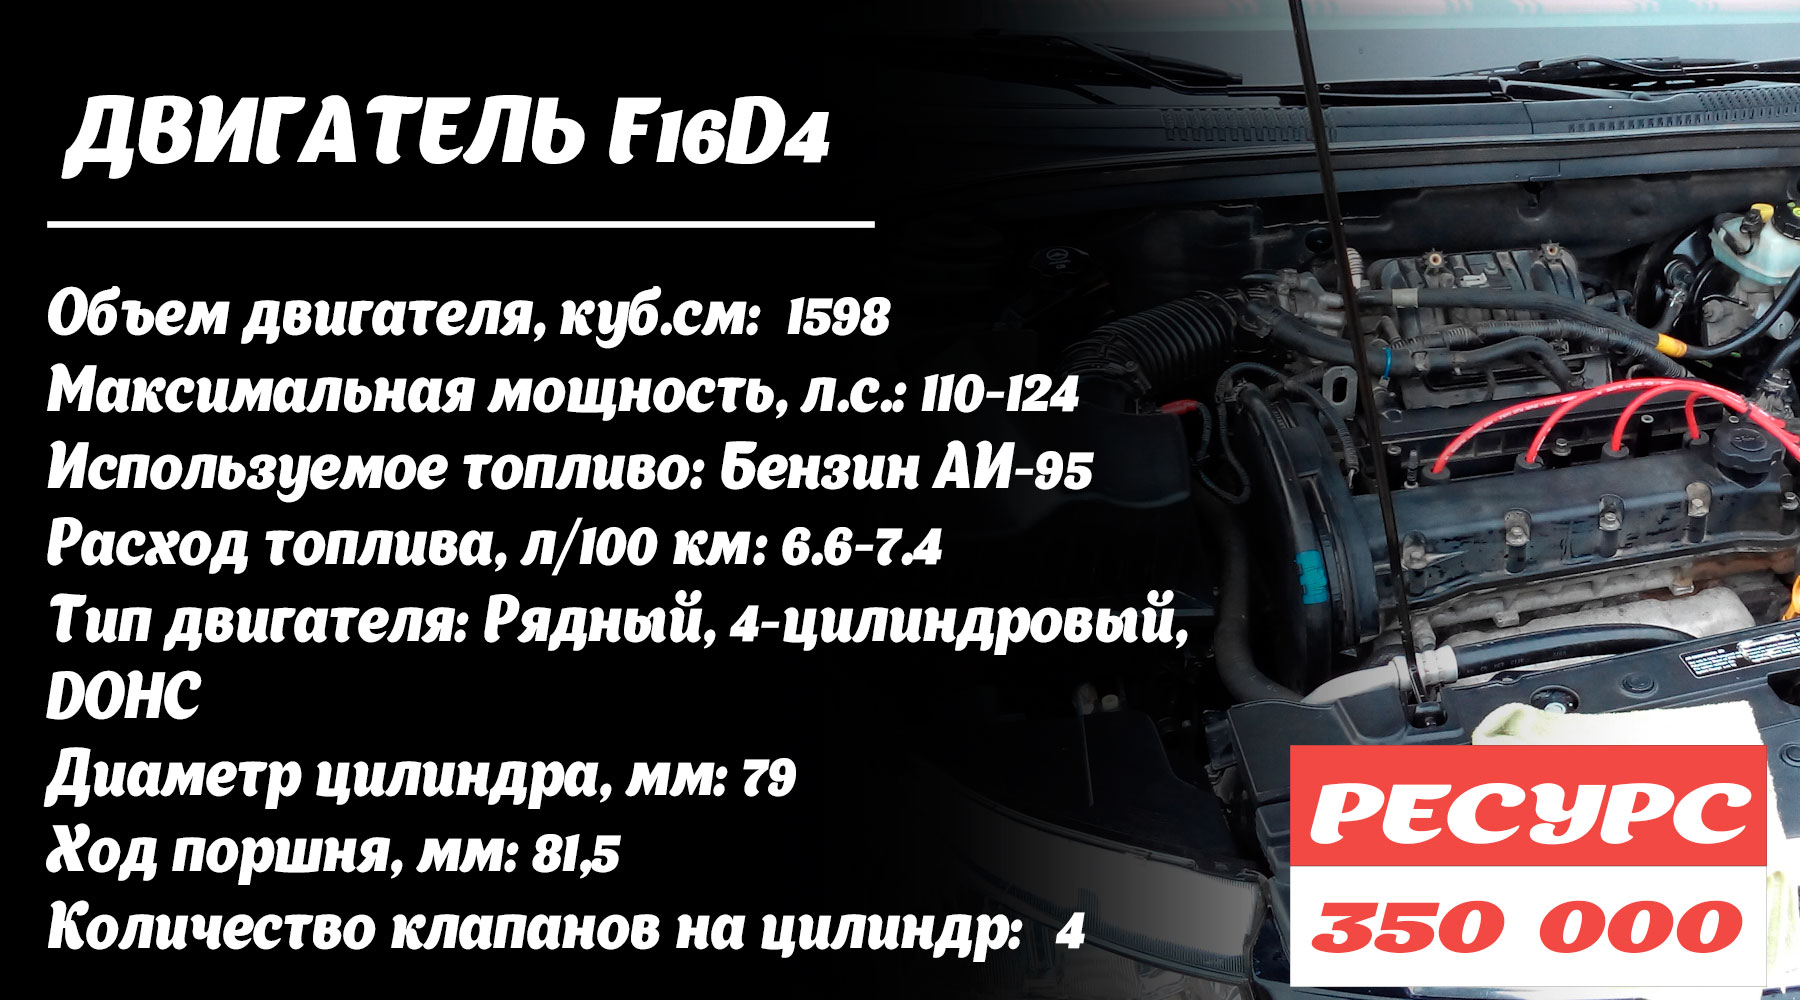 Двигатель F16D4